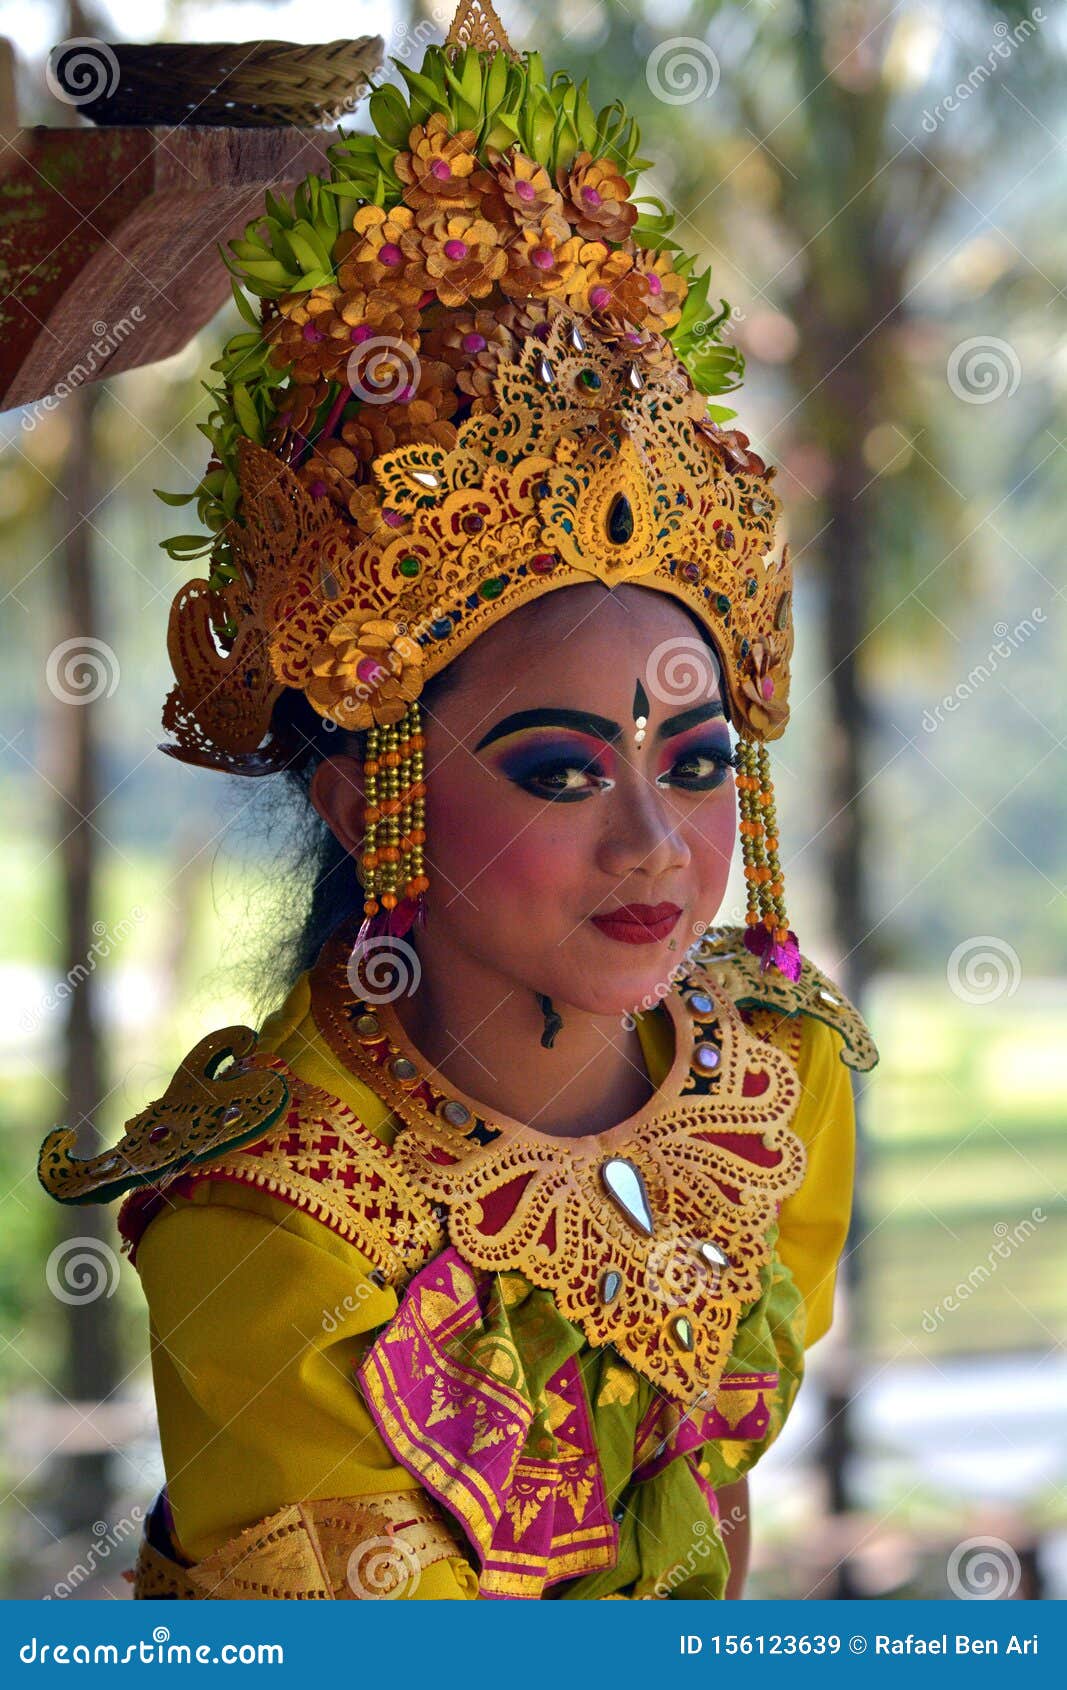 Balinese Woman Dancing Tari  Pendet Dance In Bali  Indonesia 